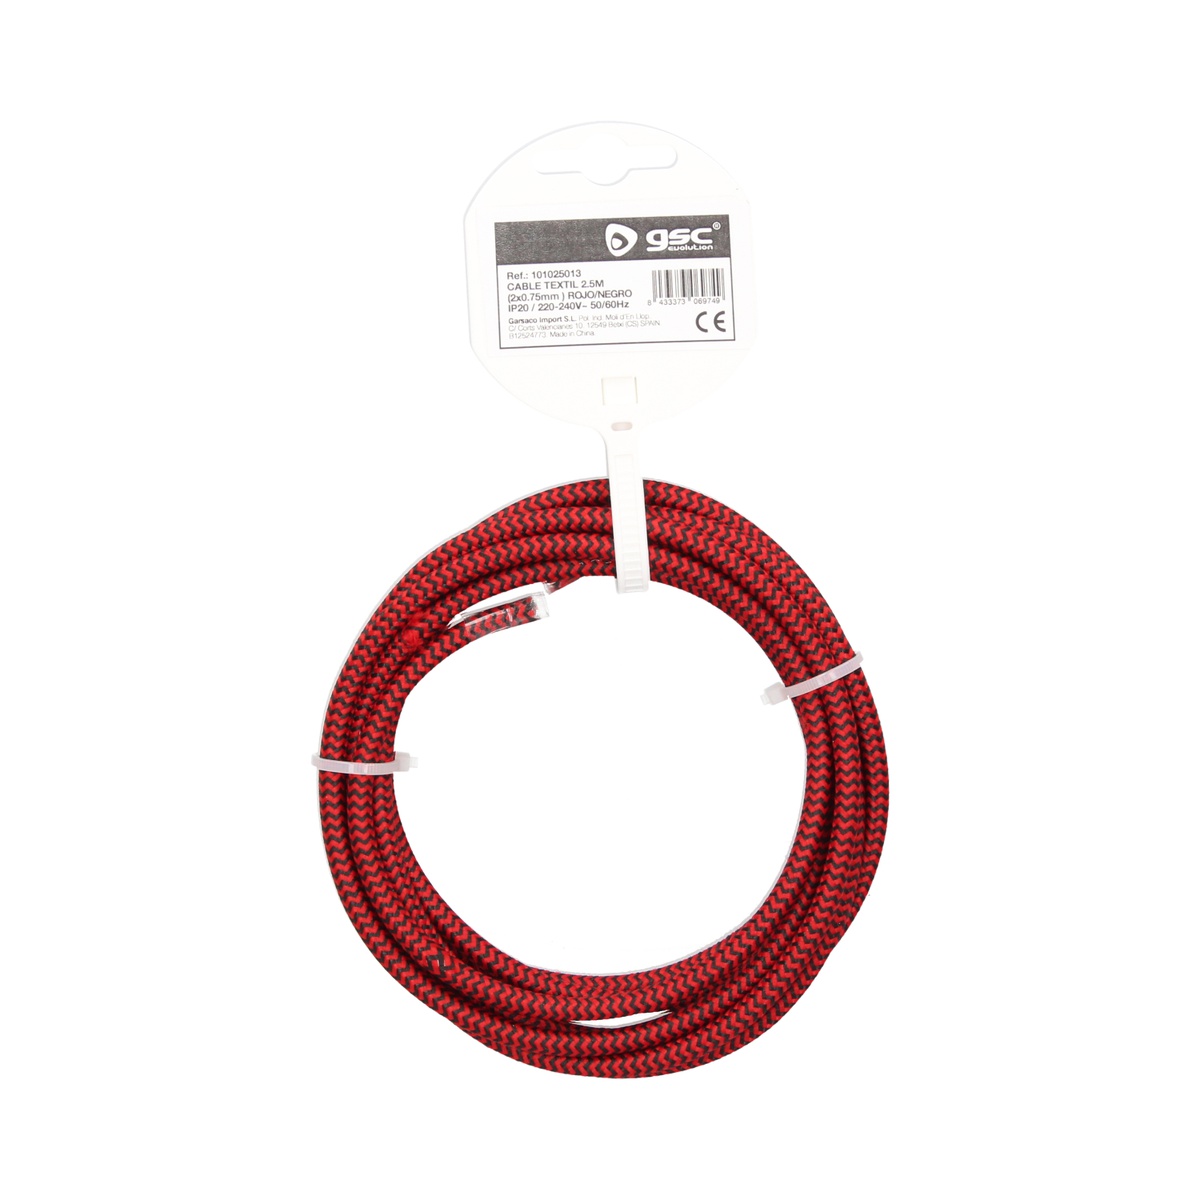 Cable textil 2,5M (2x0.75mm) Rojo/Negro